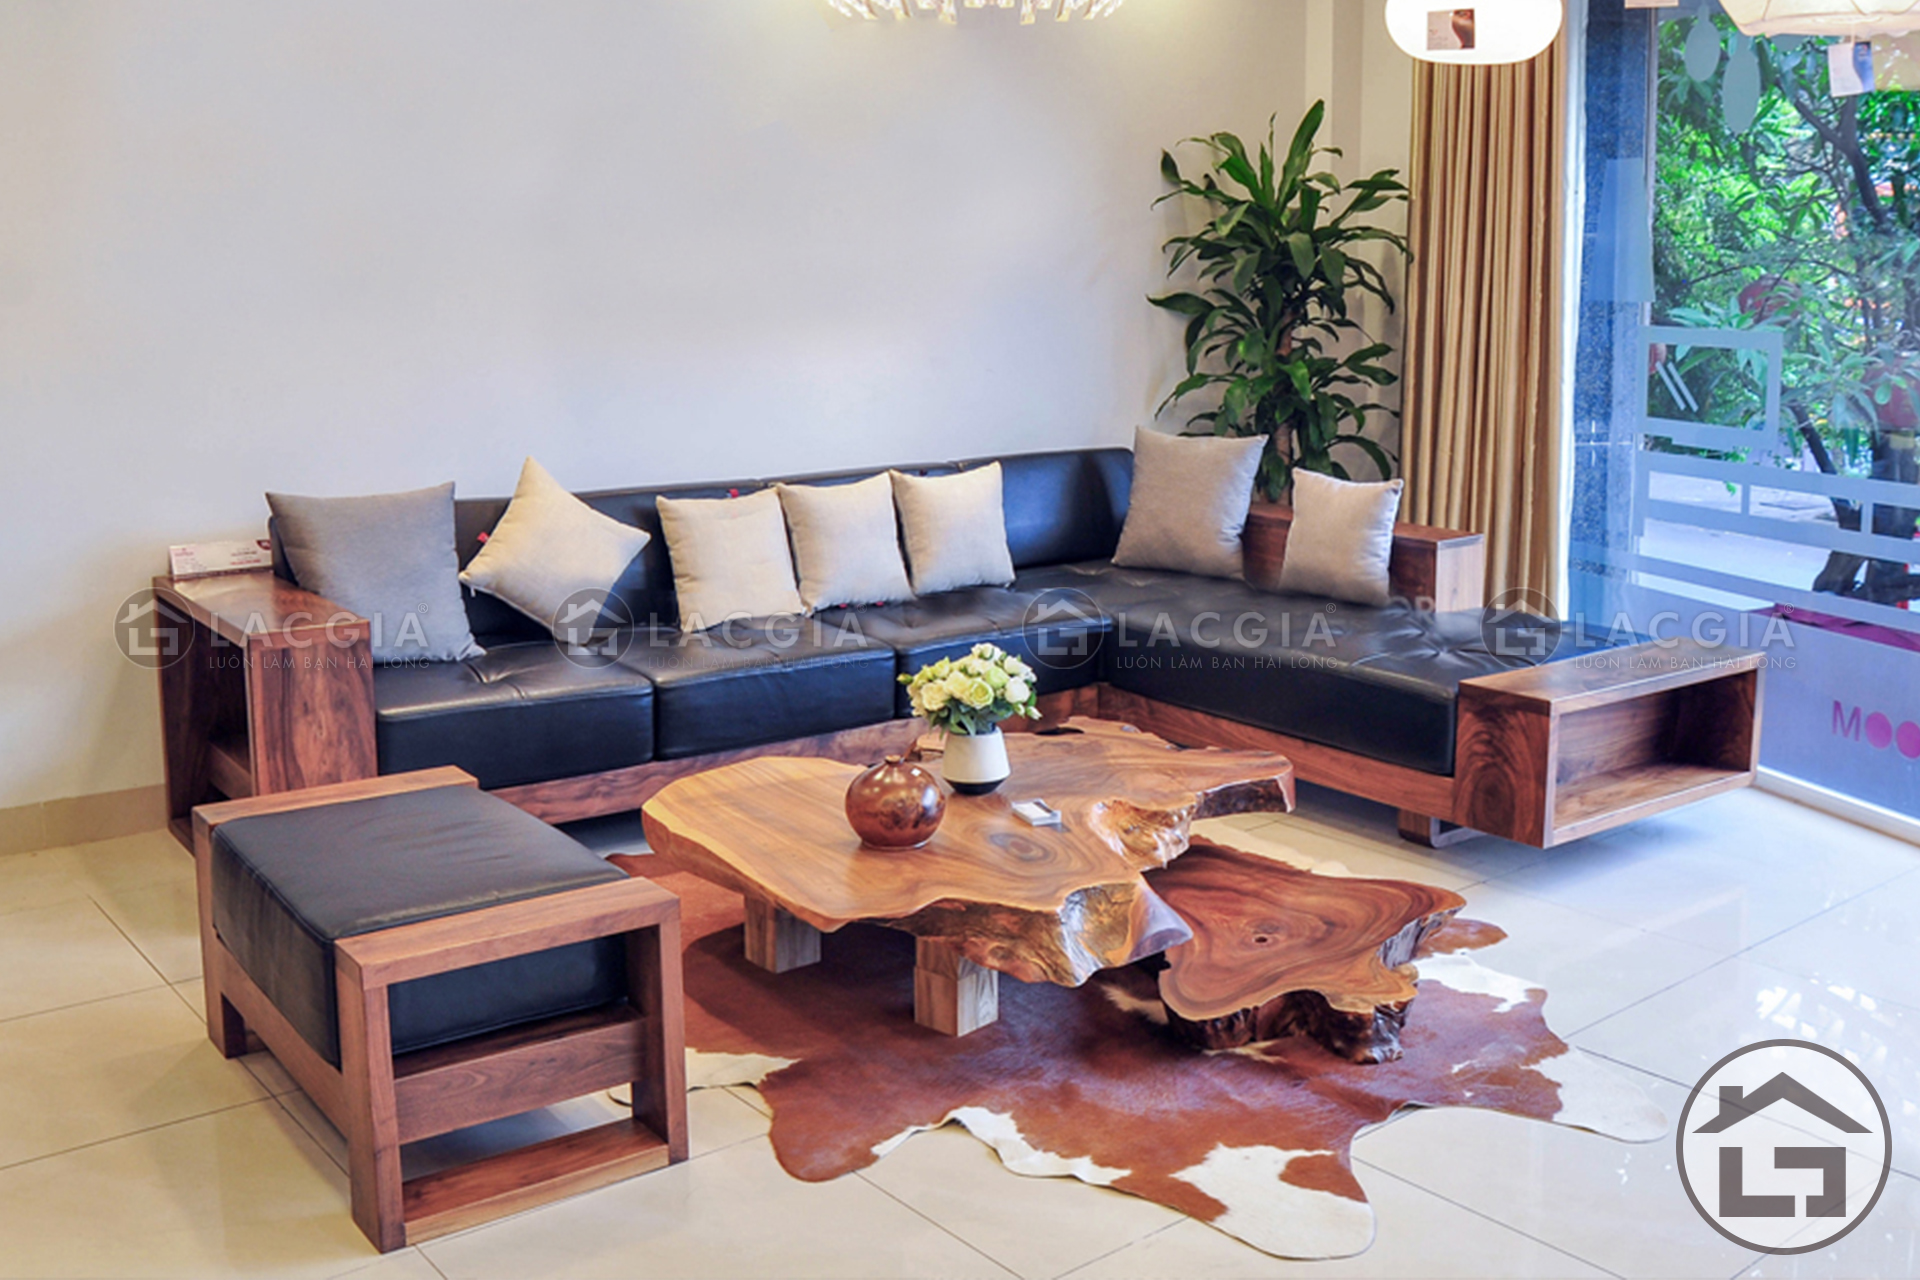 Sofa go chu L hien dai 1 - Hướng dẫn mua đồ nội thất gỗ phù hợp cho nhà bạn